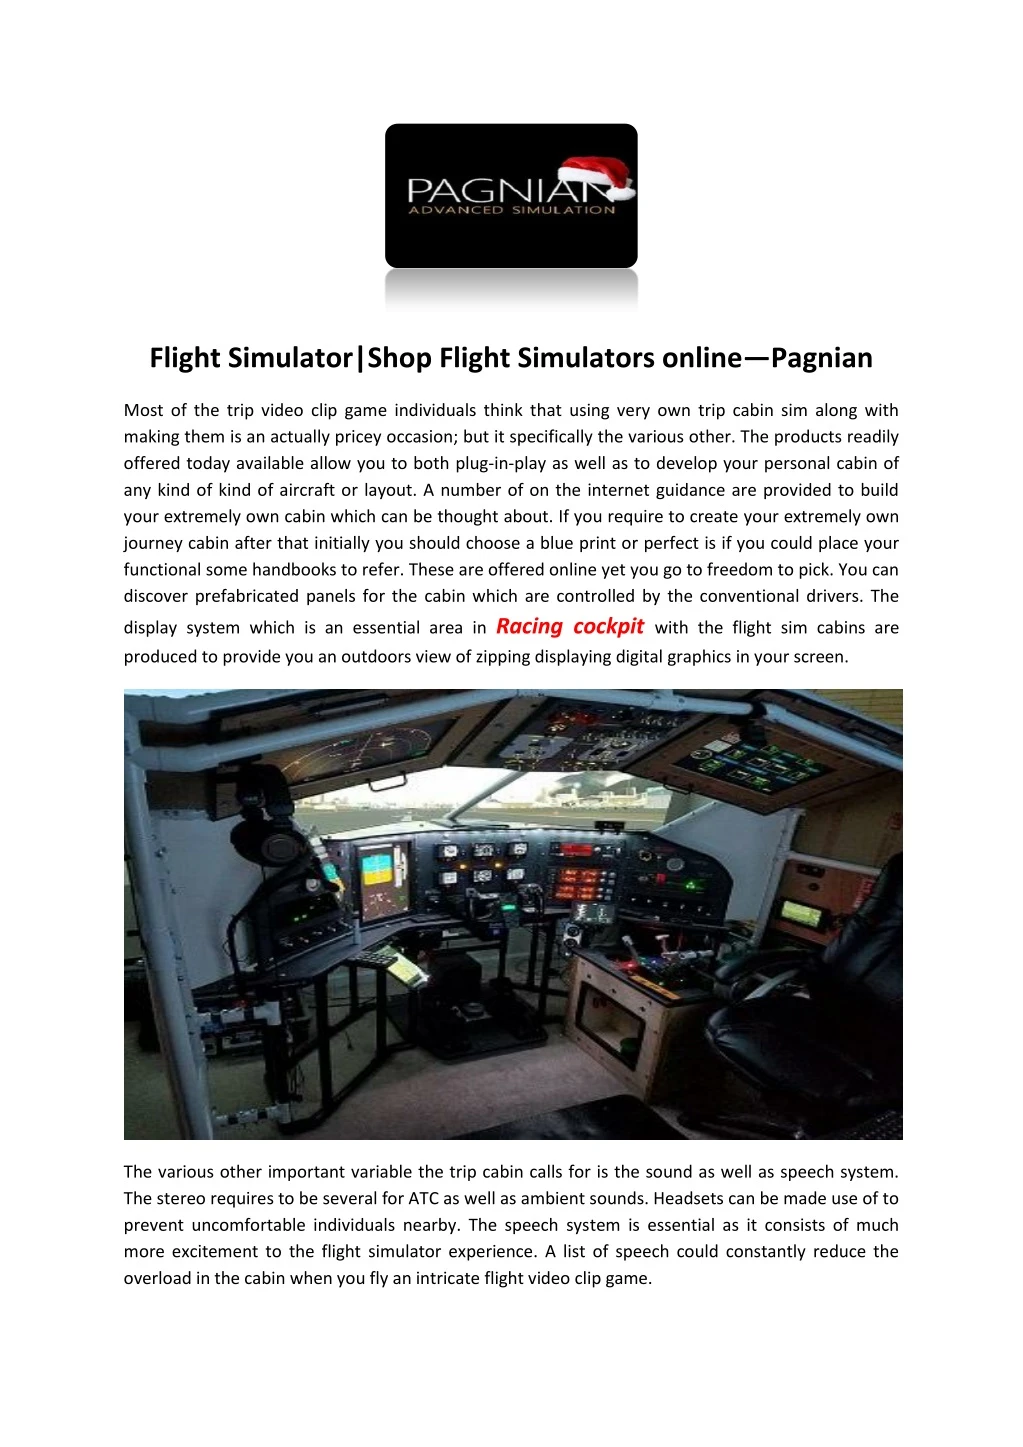 flight simulator shop flight simulators online